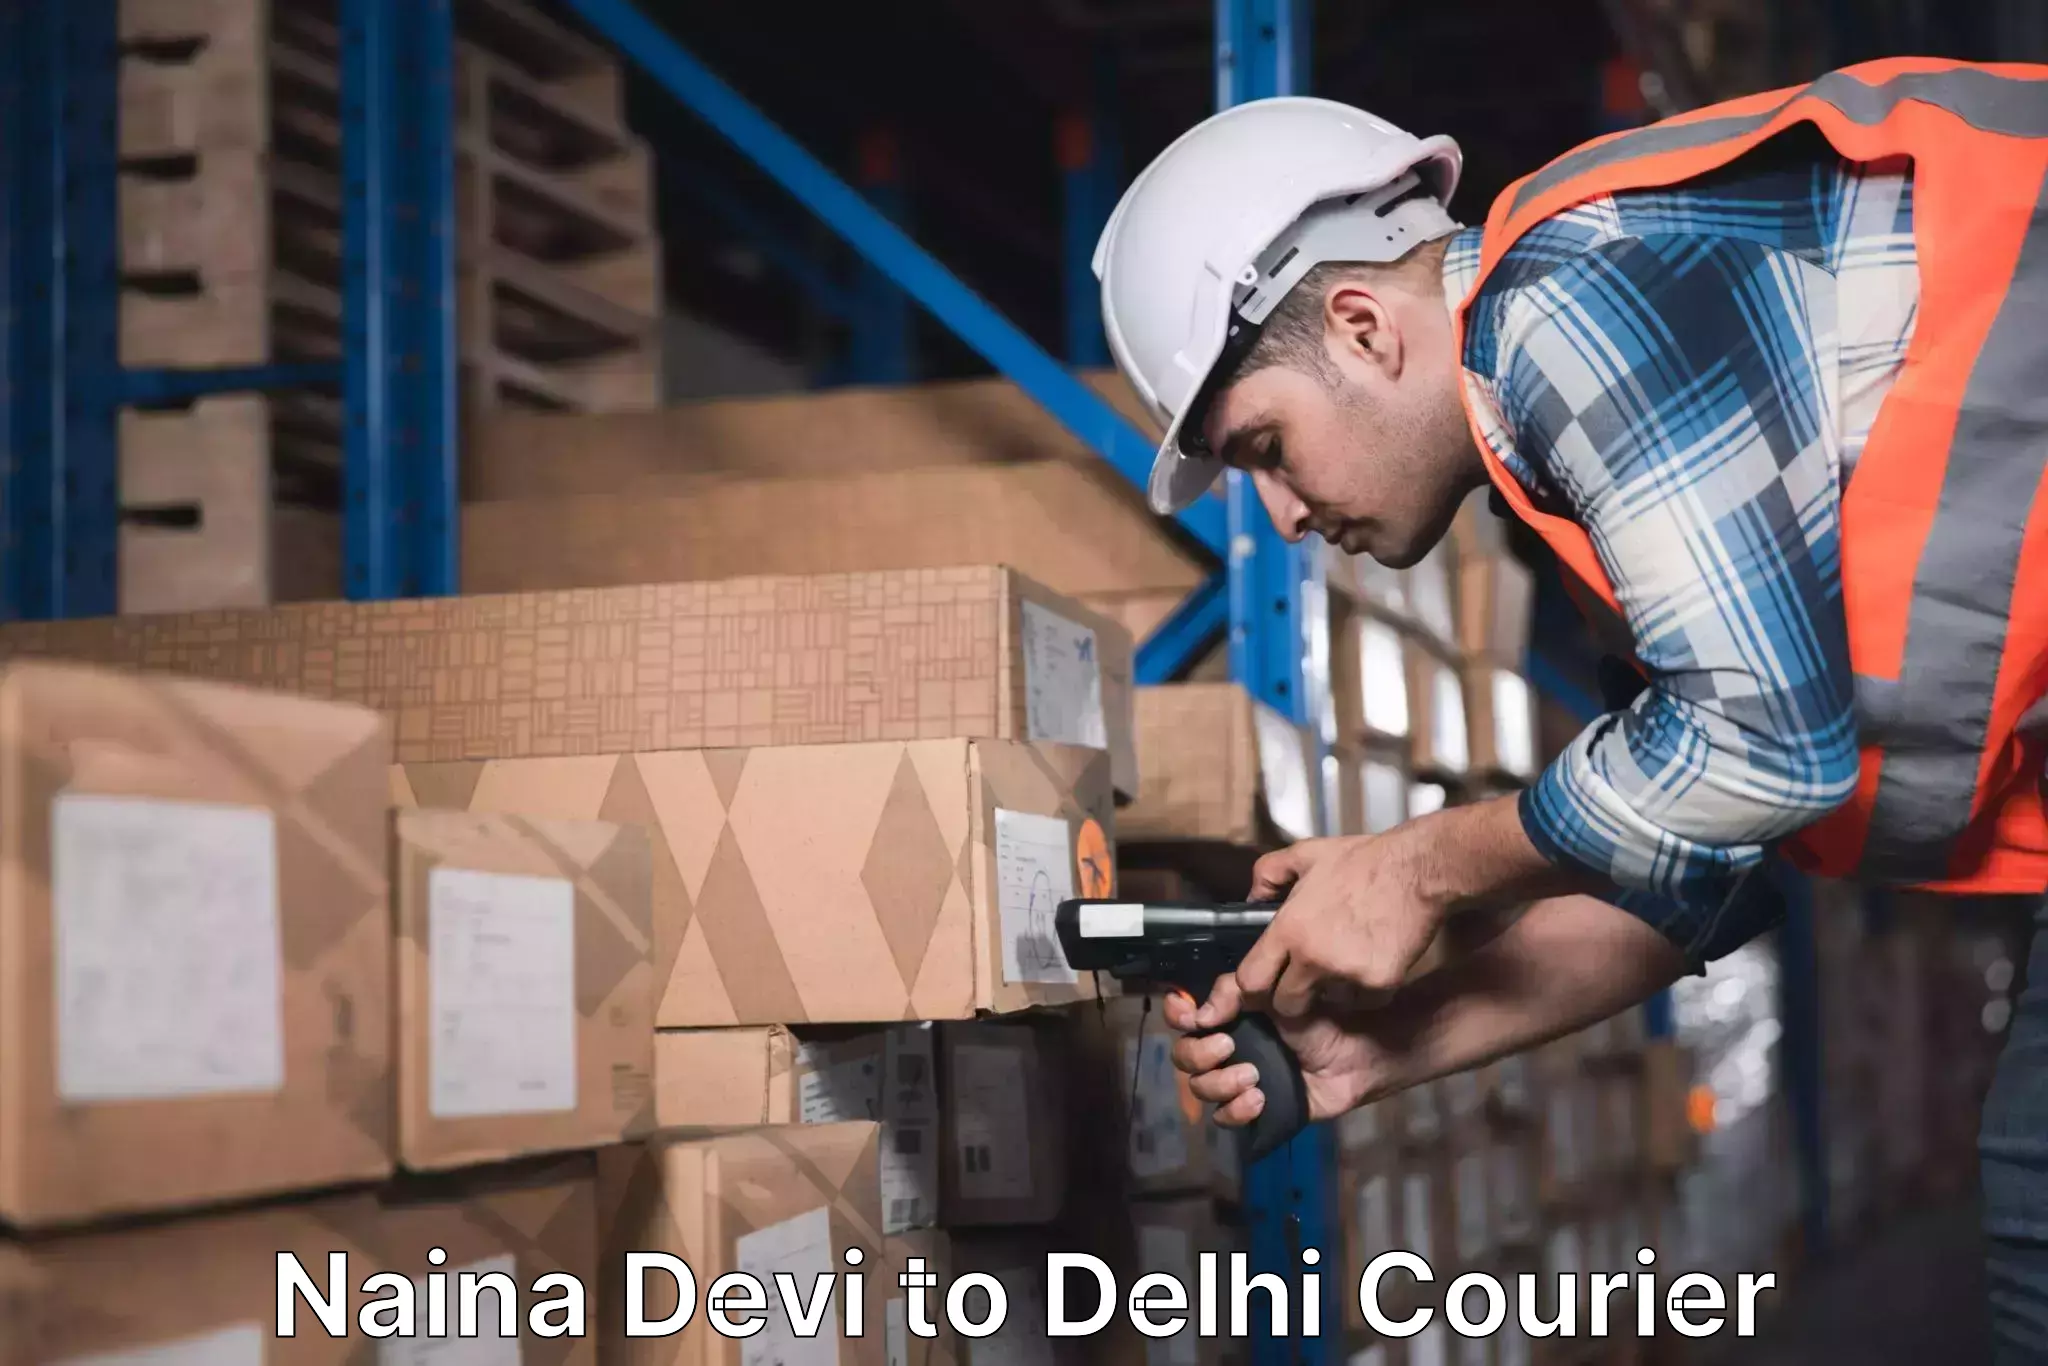 Fast delivery service Naina Devi to Delhi